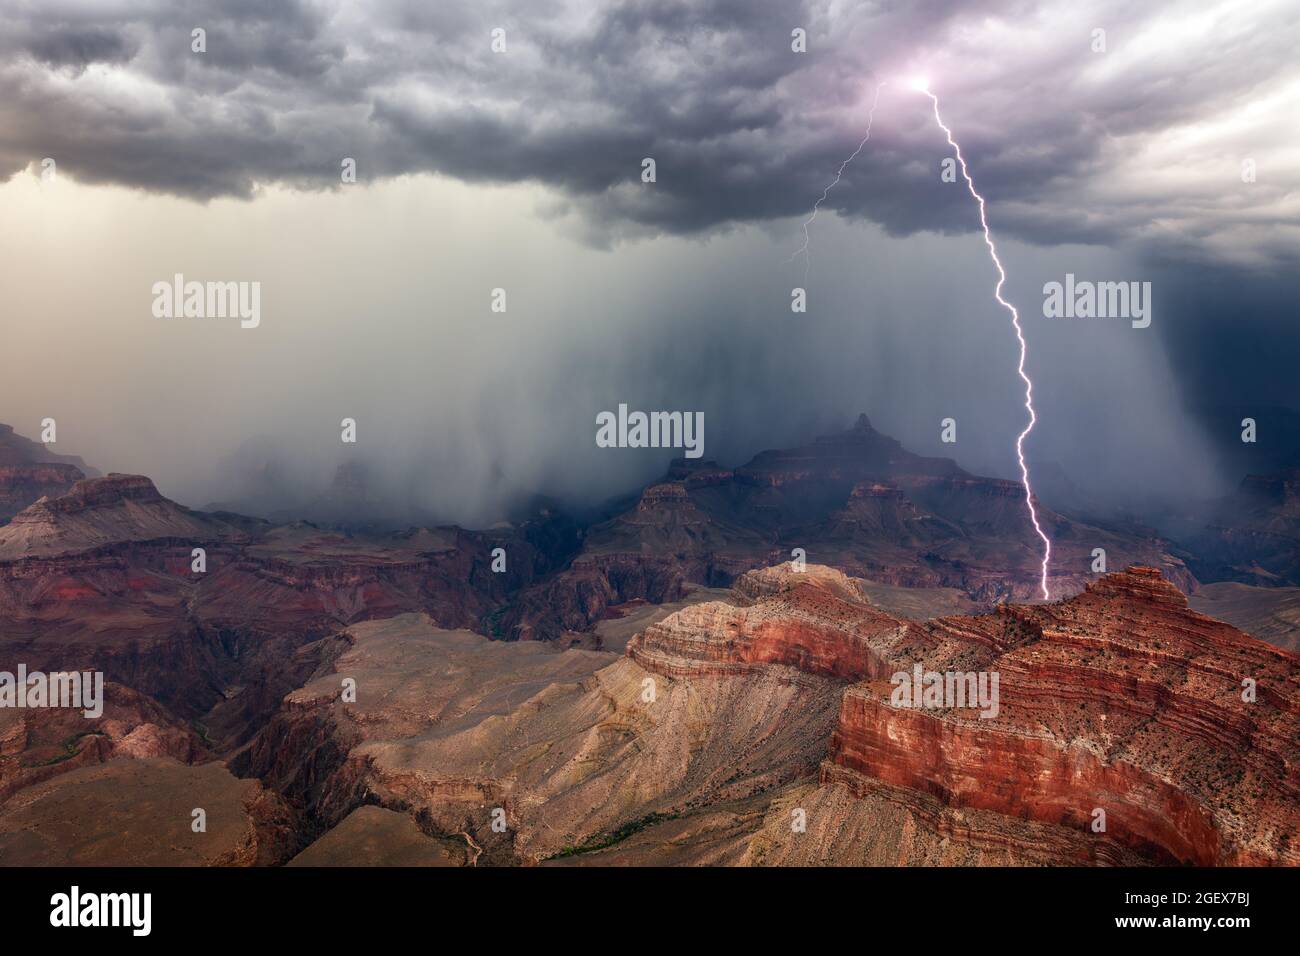 Un fulmine drammatico colpisce come una tempesta monsonica si sposta attraverso il Parco Nazionale del Grand Canyon, Arizona Foto Stock